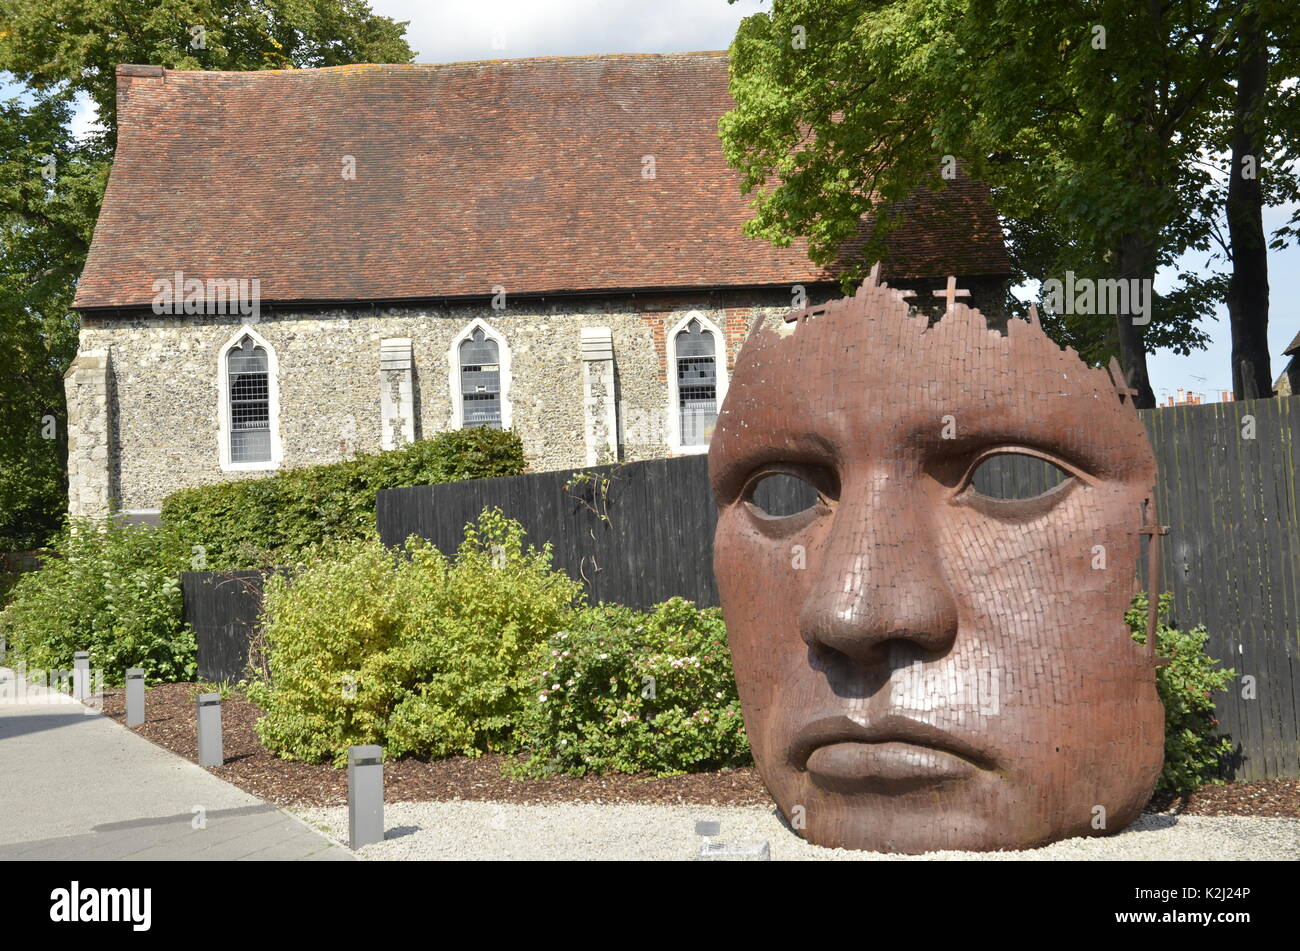 Une sculpture à l'extérieur du théâtre Marlowe à Canterbury, Kent. Nommé d'après le poète et dramaturge Christopher Marlowe. Banque D'Images